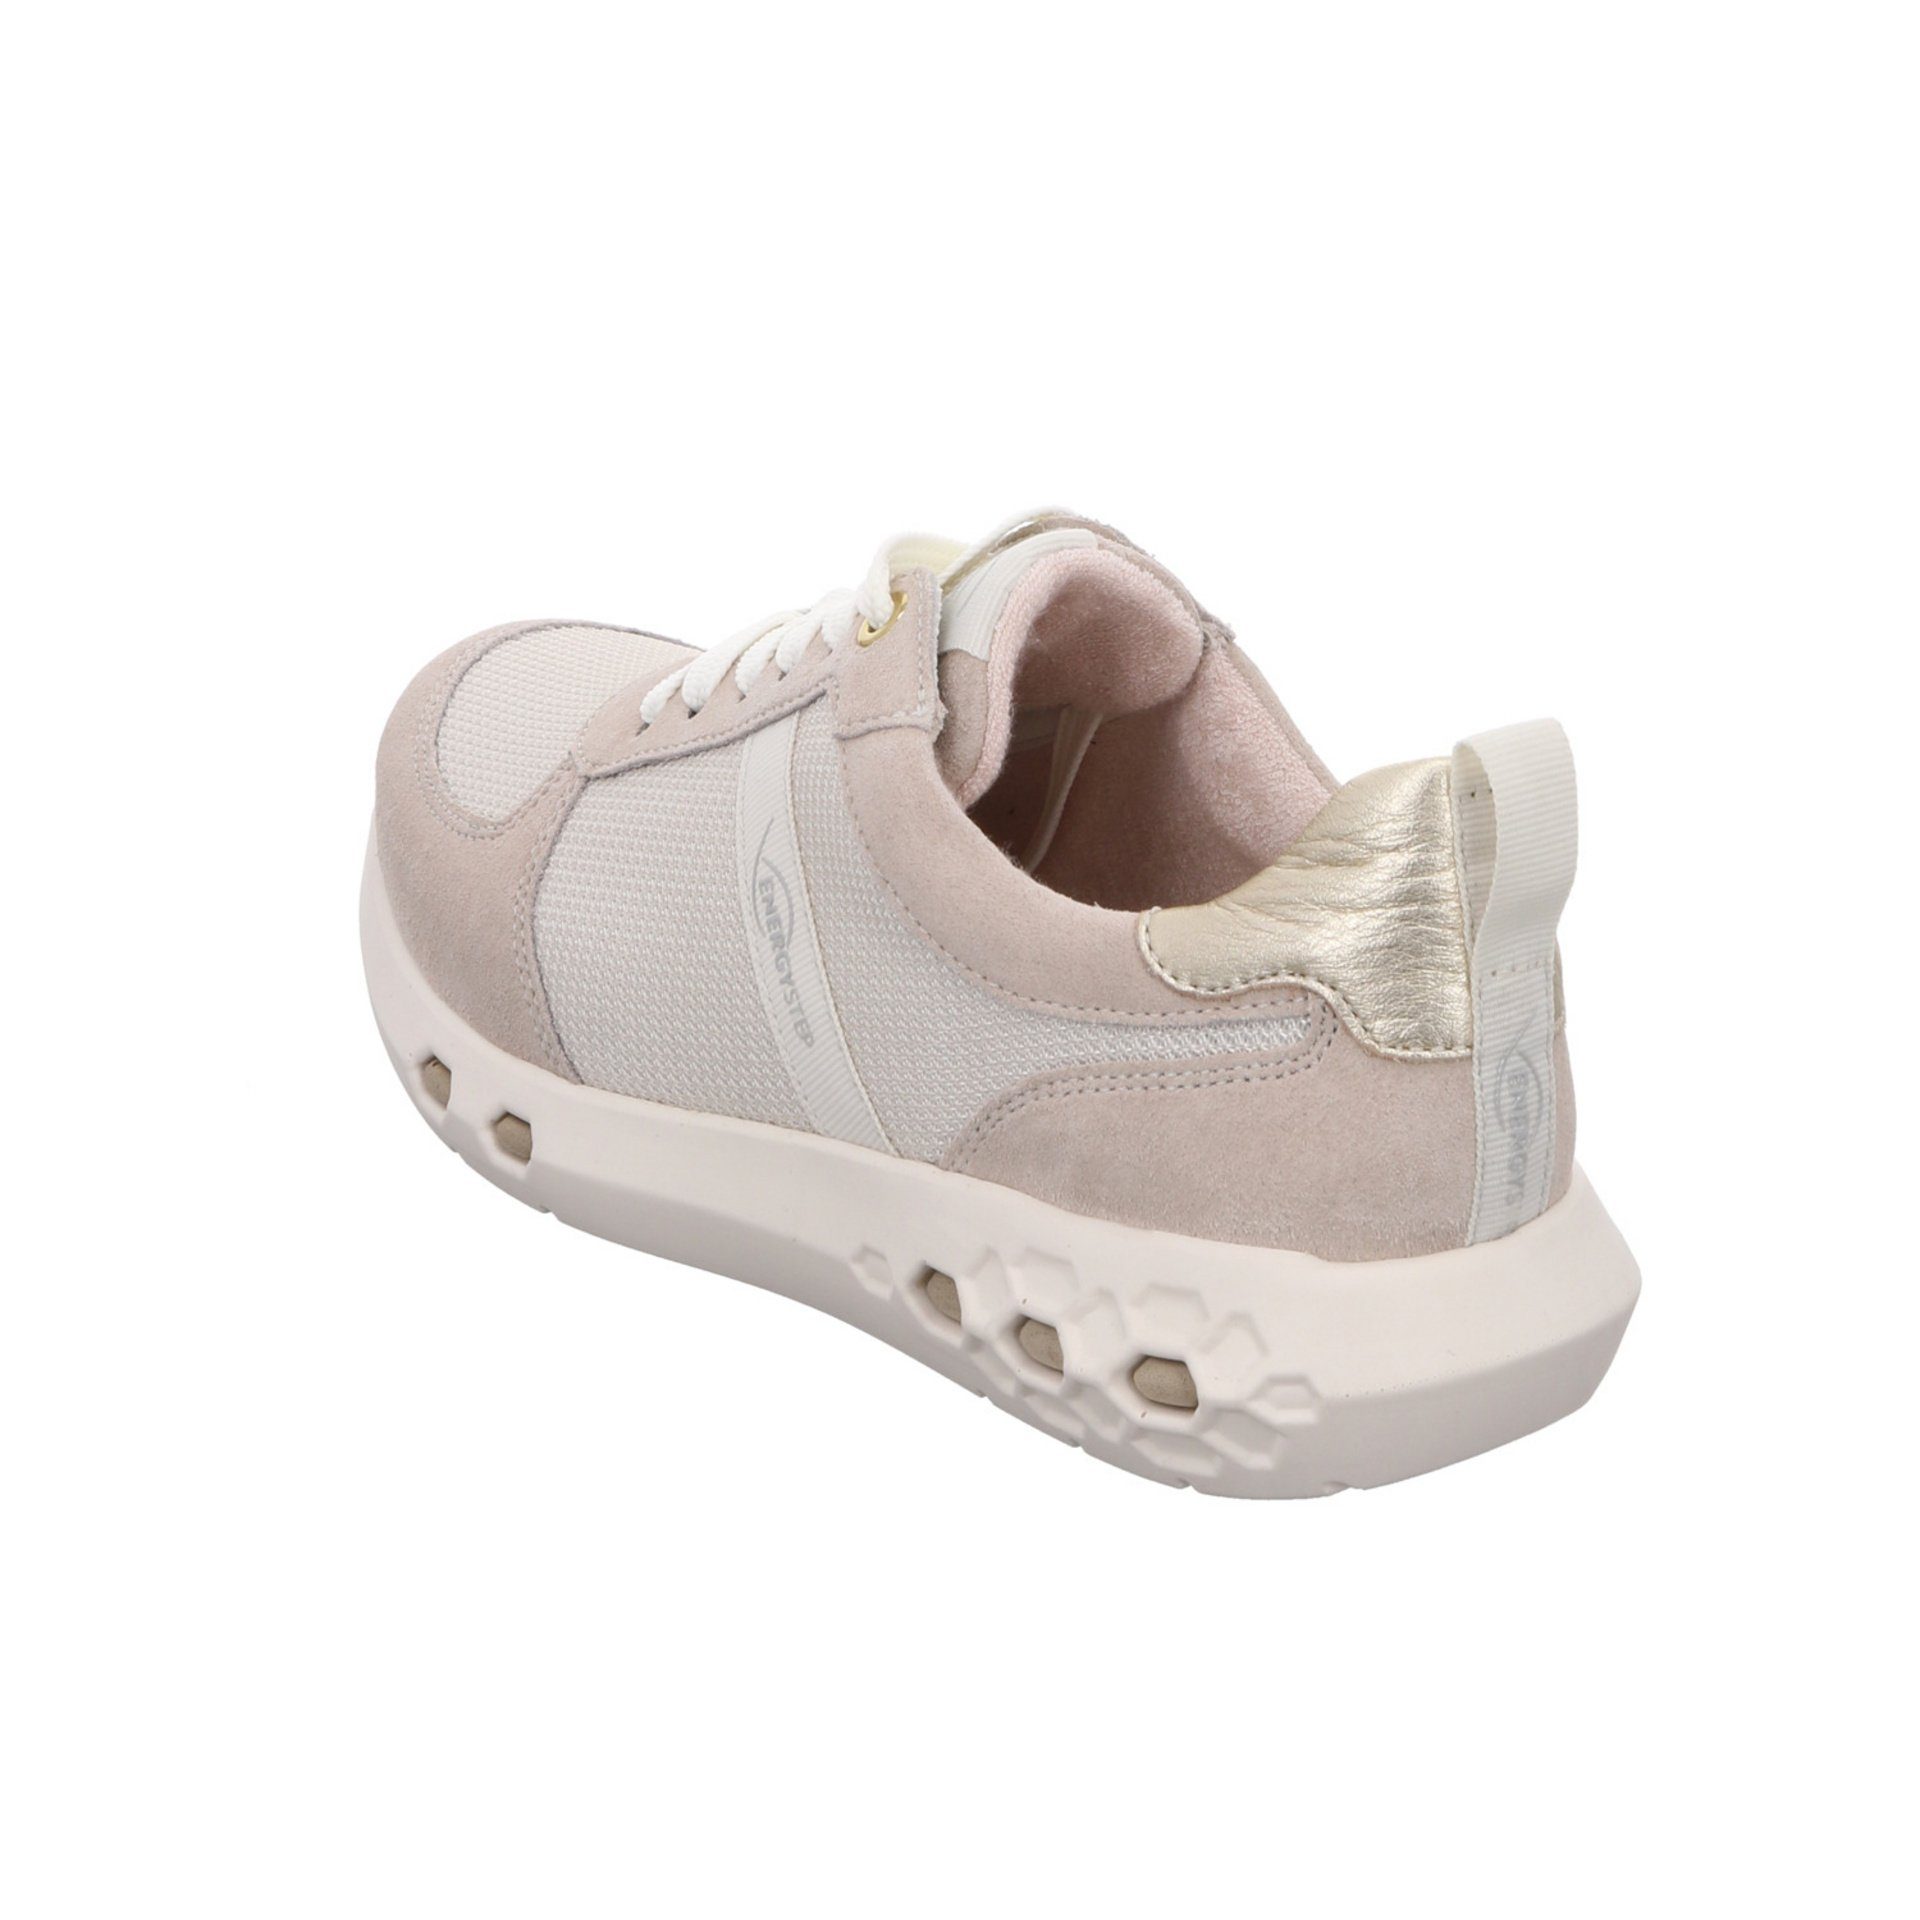 Schnürhalbschuhe Schnürschuh Cream 2.0 Jumper Damen Leder-/Textilkombination Sneaker Ara